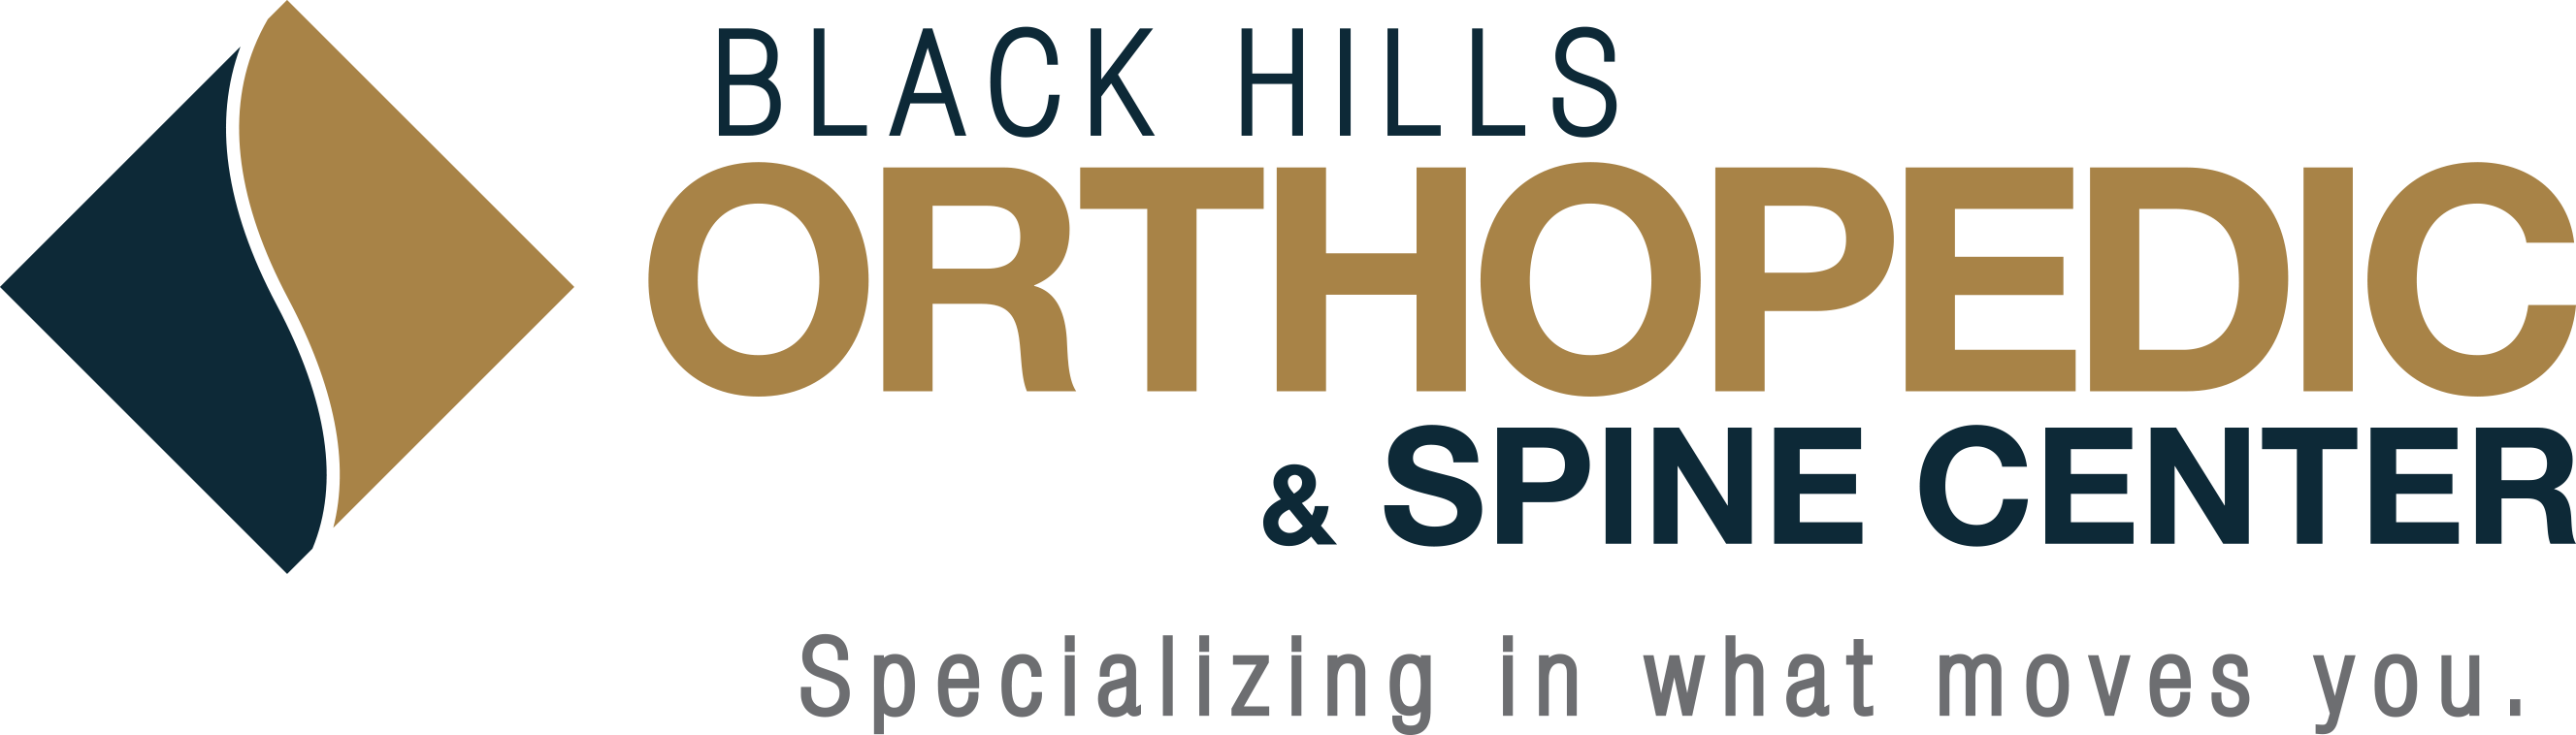 Black Hills Orthopedic & Spine Center